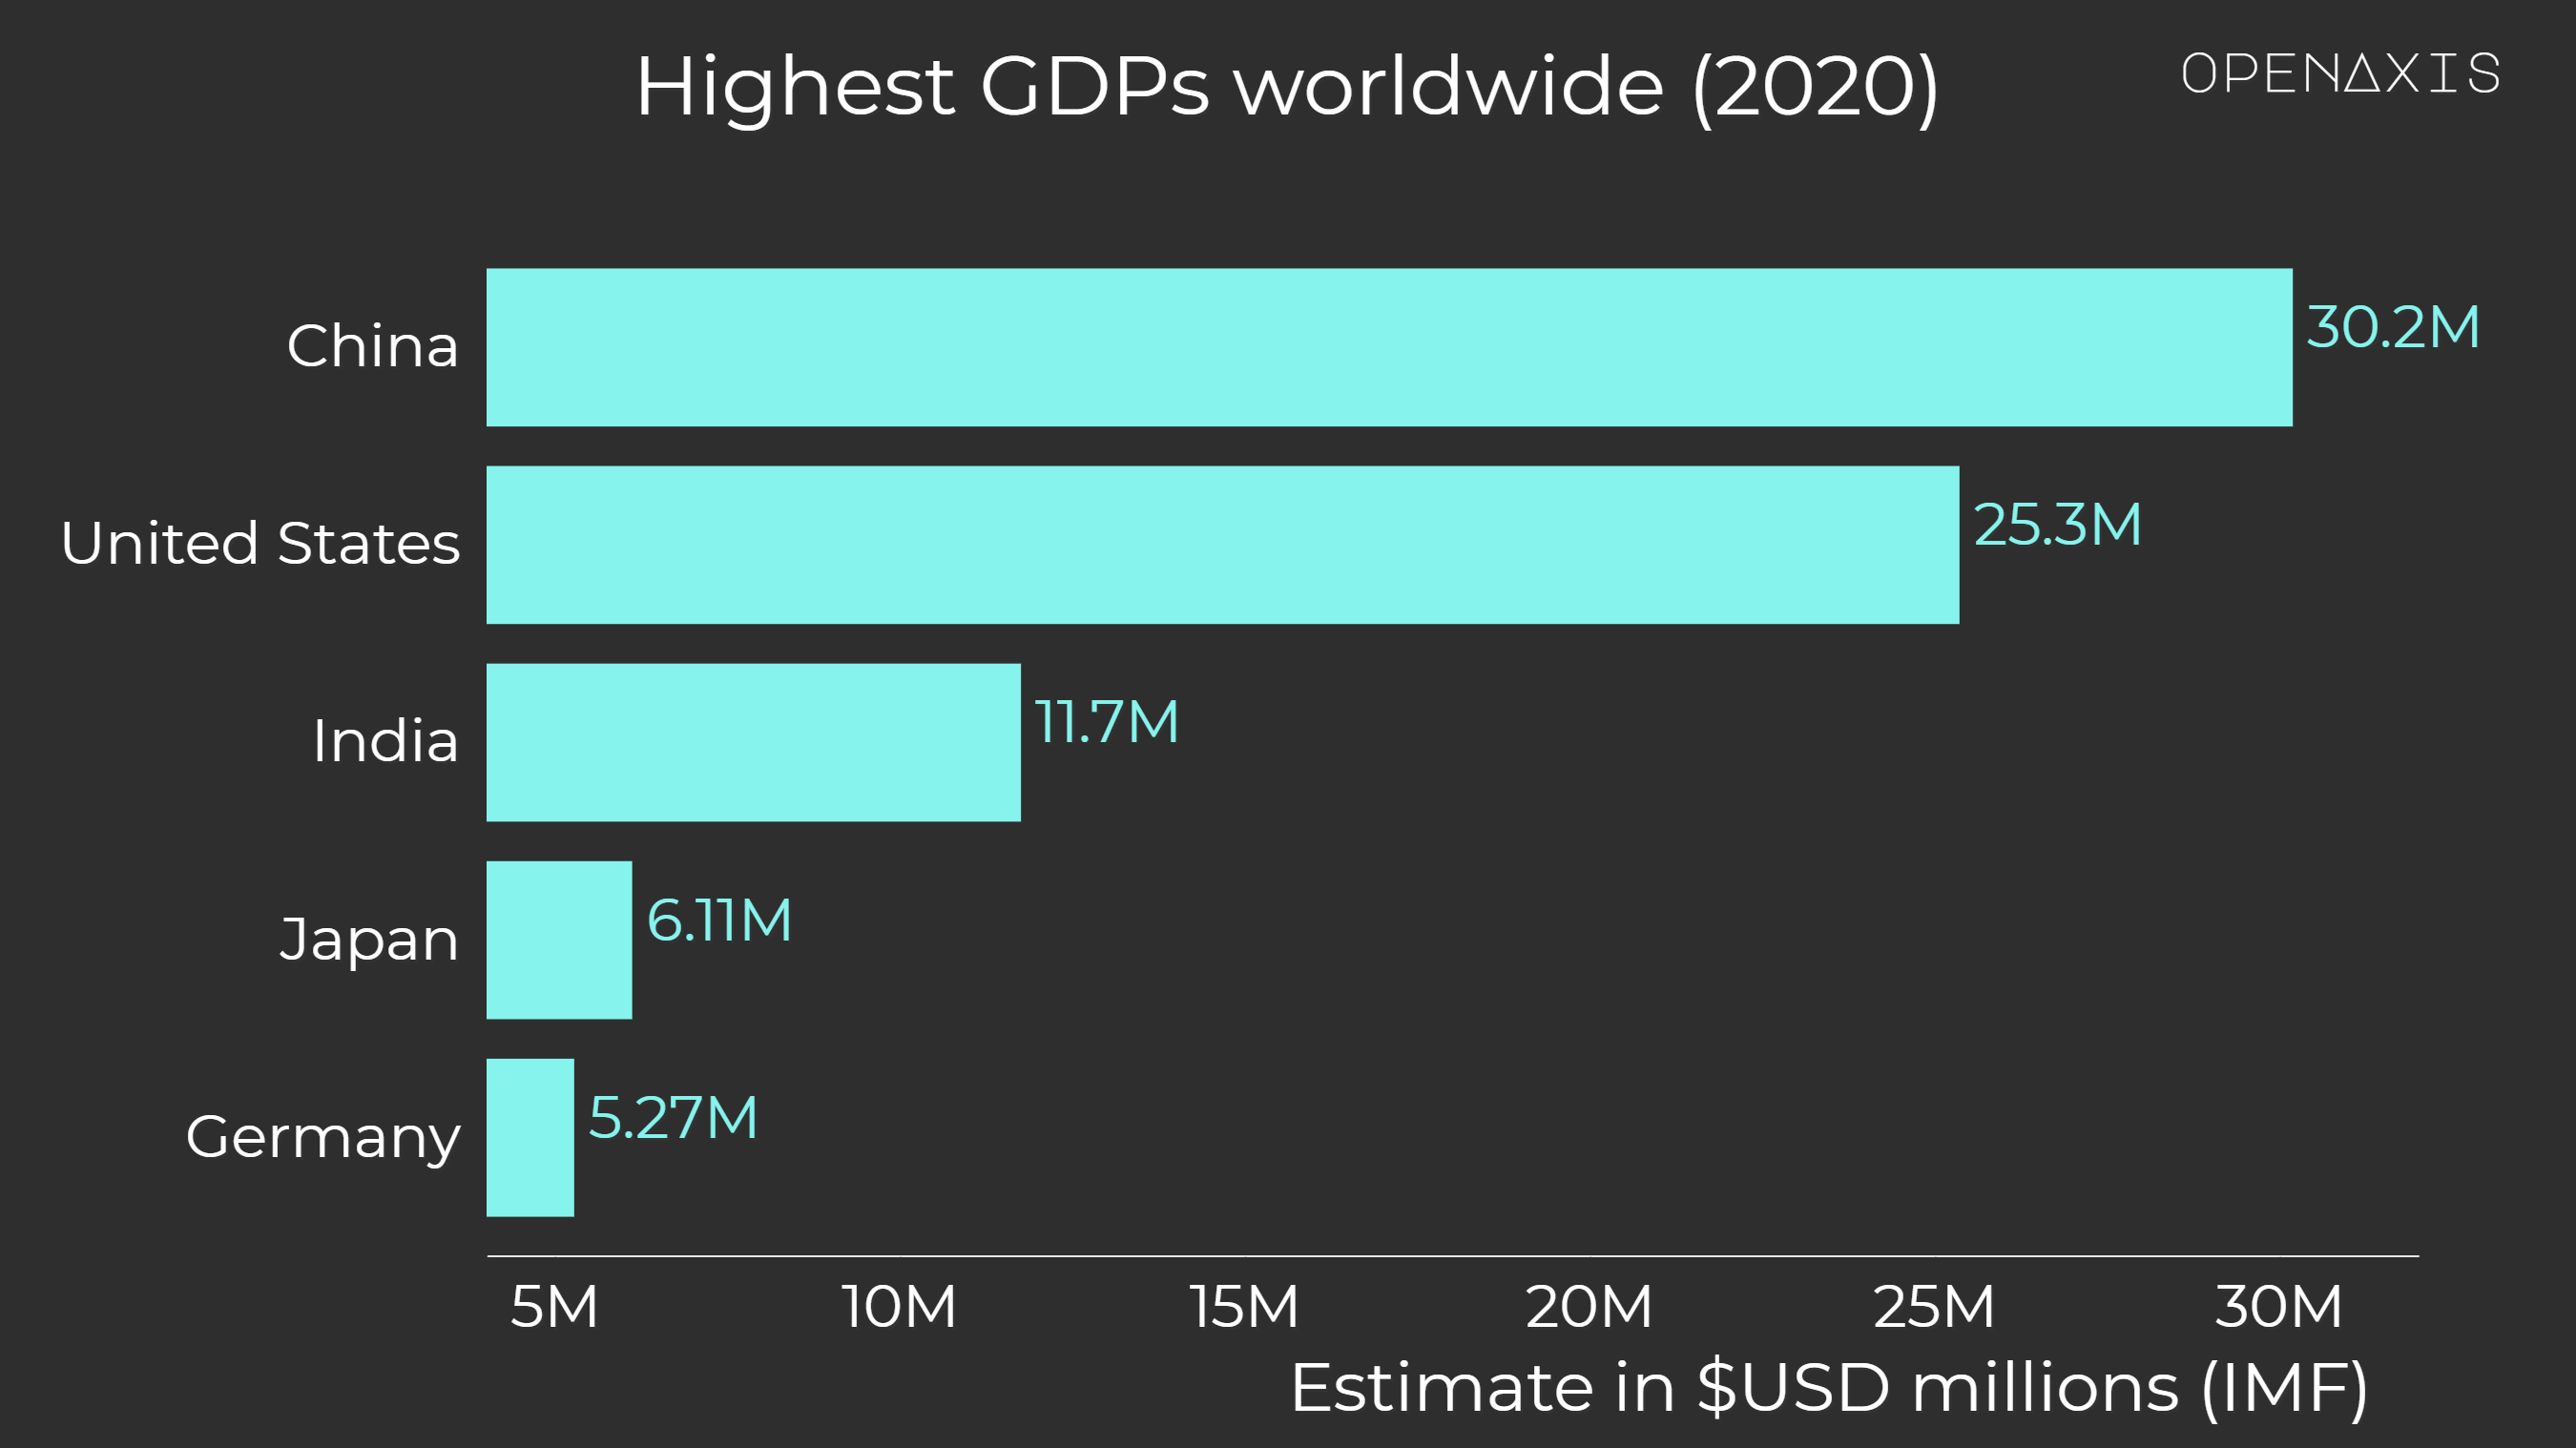 "Highest GDPs worldwide (2020)"